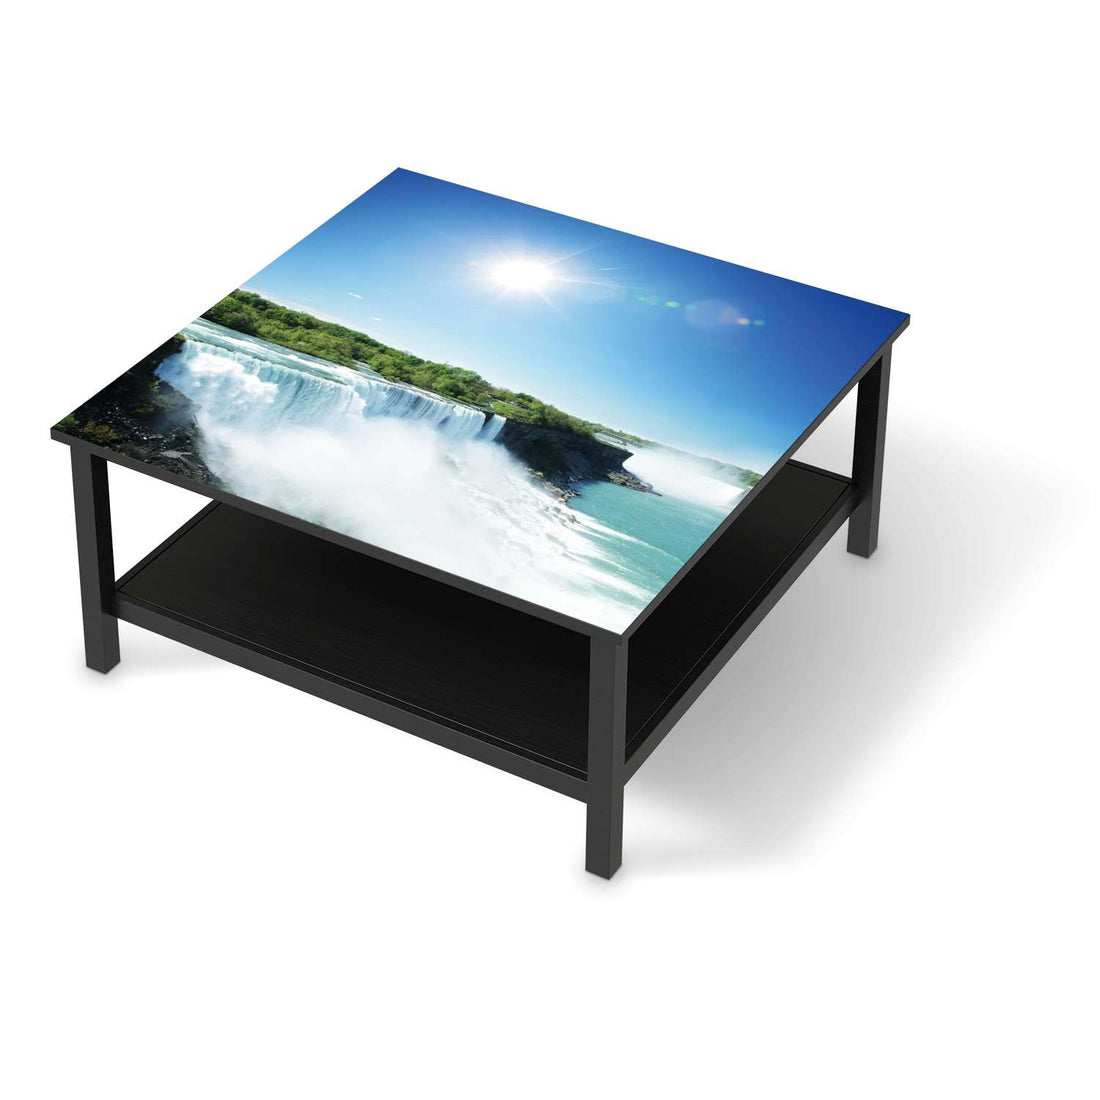 Klebefolie für Möbel Niagara Falls - IKEA Hemnes Couchtisch 90x90 cm - schwarz